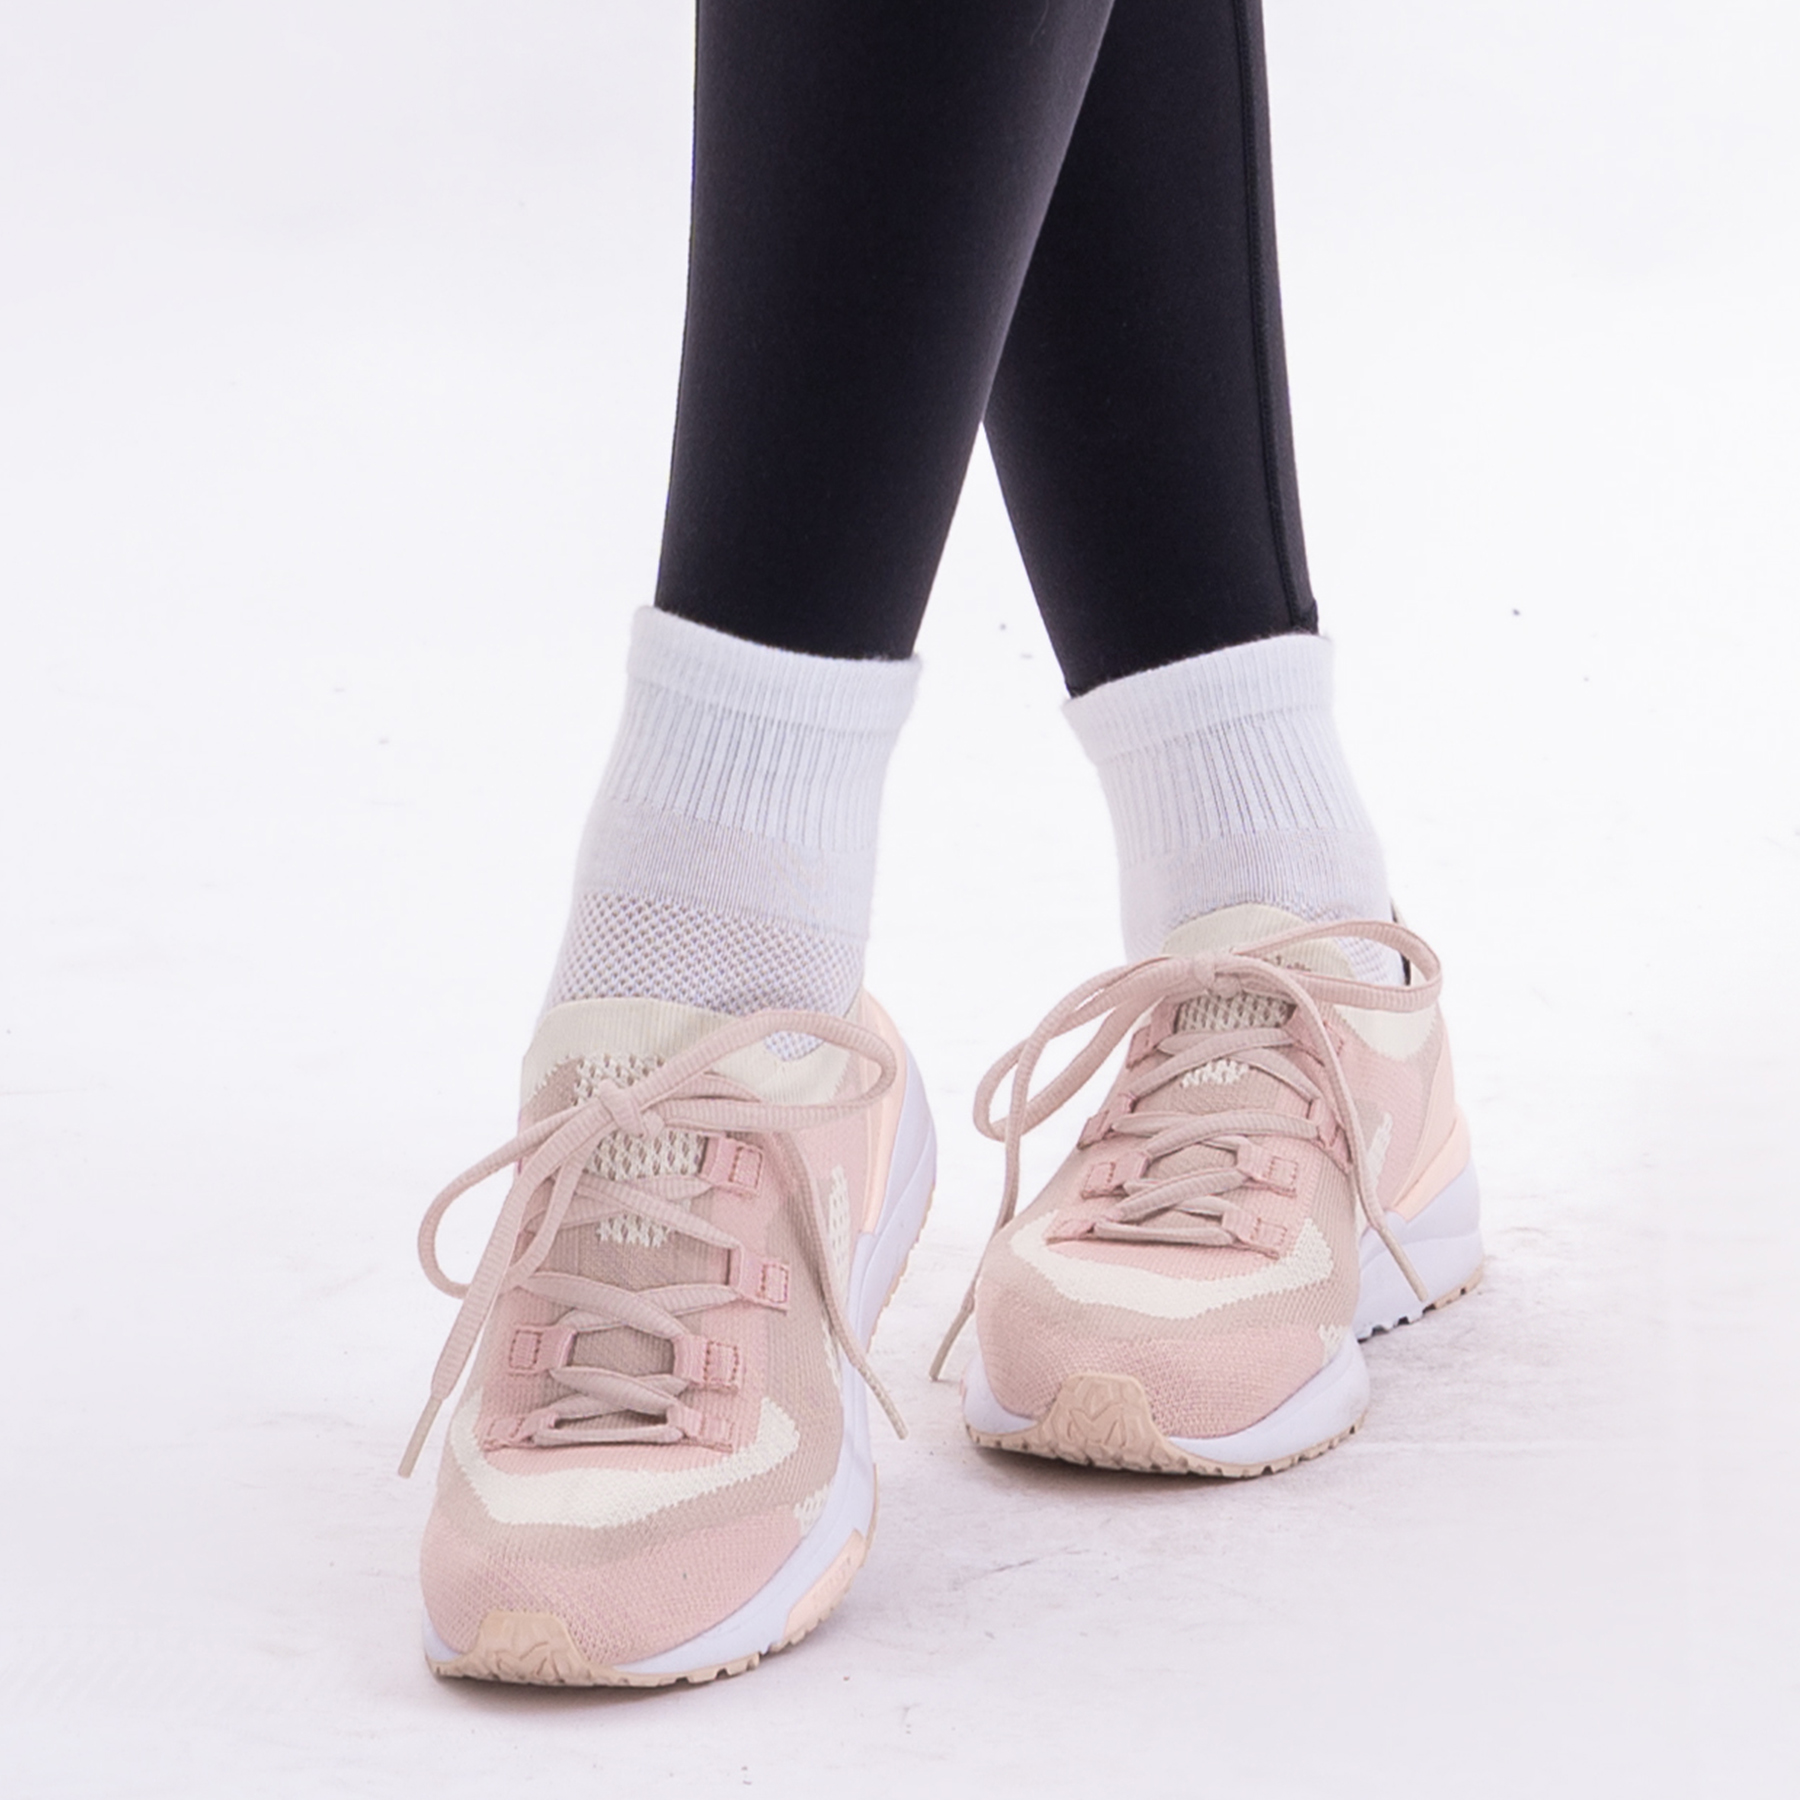 Tất thể thao cổ ngắn Hibi Sports A011 Cotton chống hôi chân, loại có đệm và bo ôm chân chống trượt